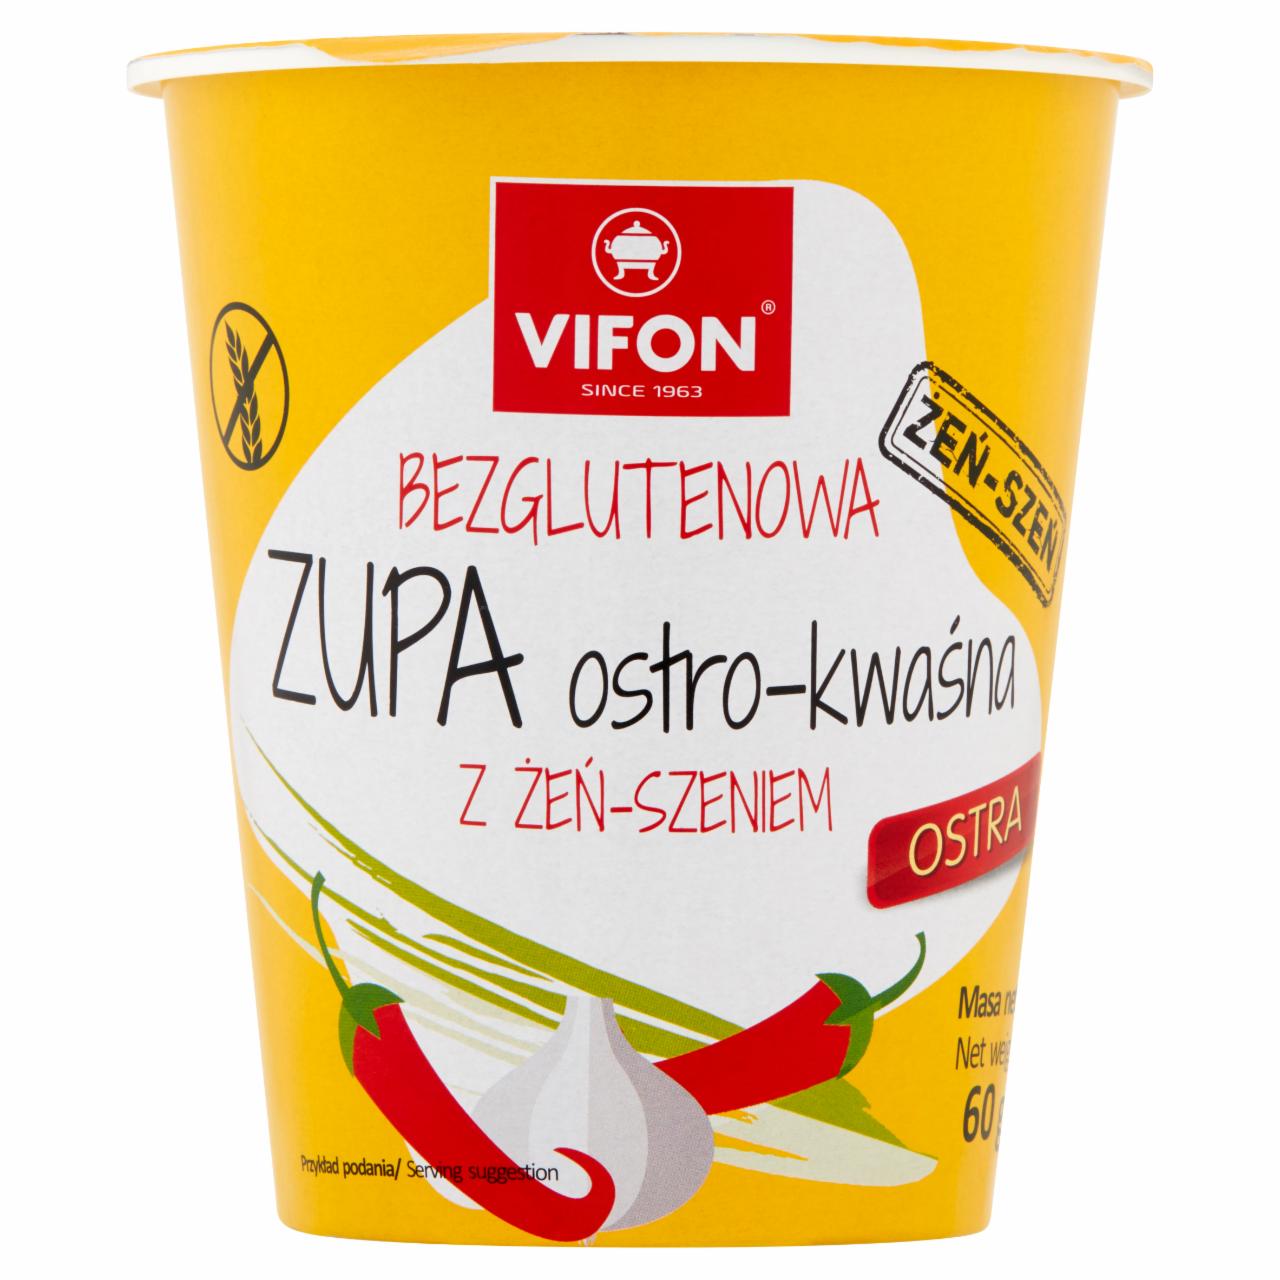 Zdjęcia - Vifon Bezglutenowa zupa ostro-kwaśna z żeń-szeniem 60 g